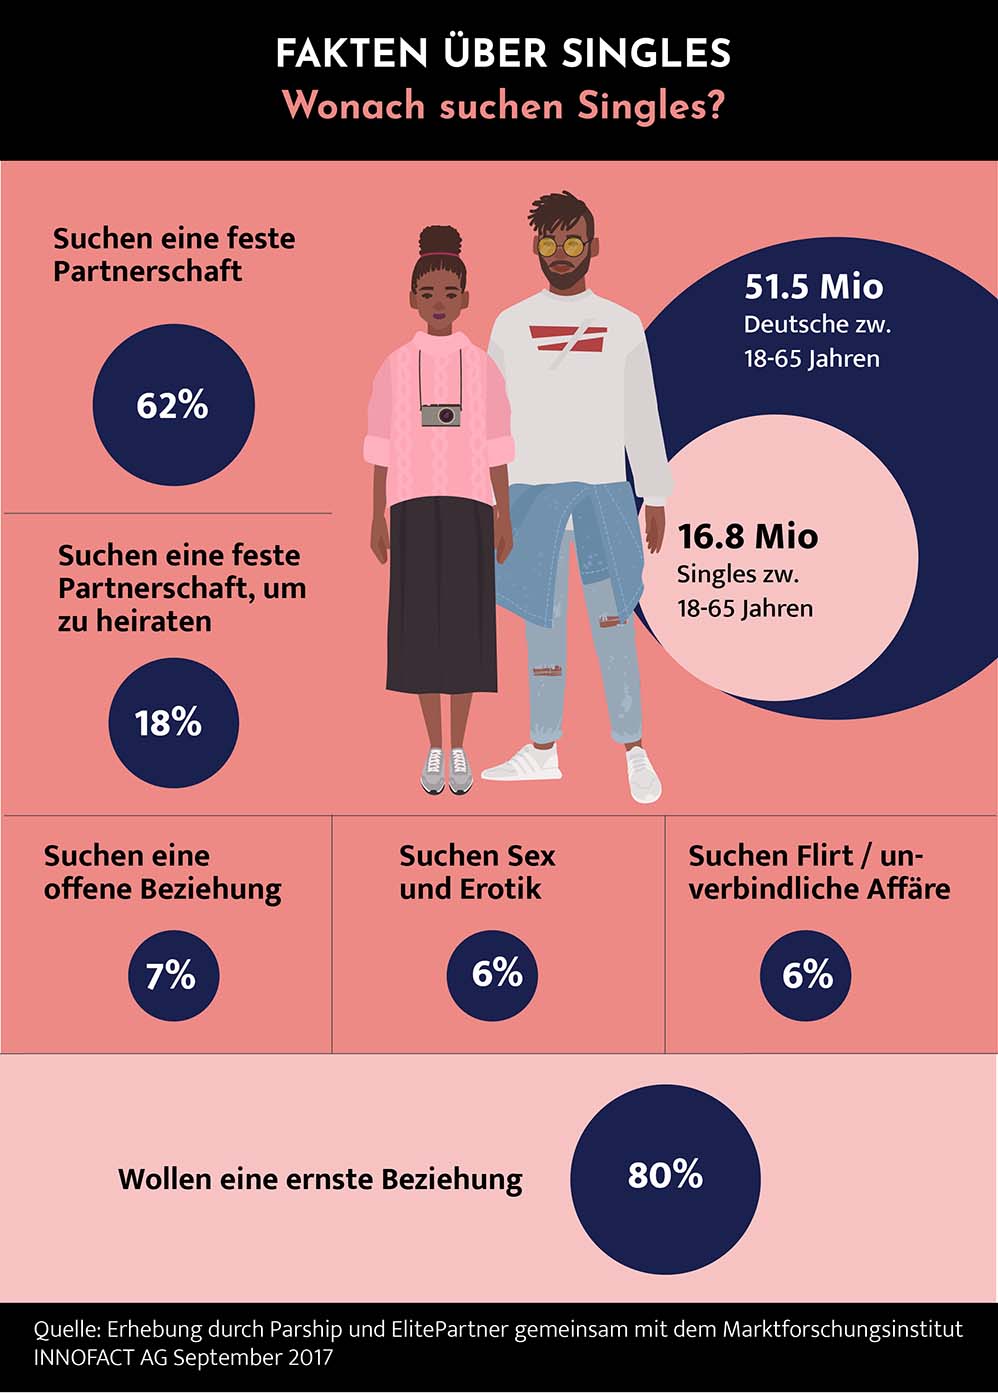 Infografik mit Statistik: Wonach suchen Singles? 62% suchen eine frste Partnerschaft. 18% möchten eine Ehe. 7% suchen eine offene Beziehung. 6% suchen Sex und Erotik. 6% Suchen einen Flirt oder eine unverbindliche Affaire.